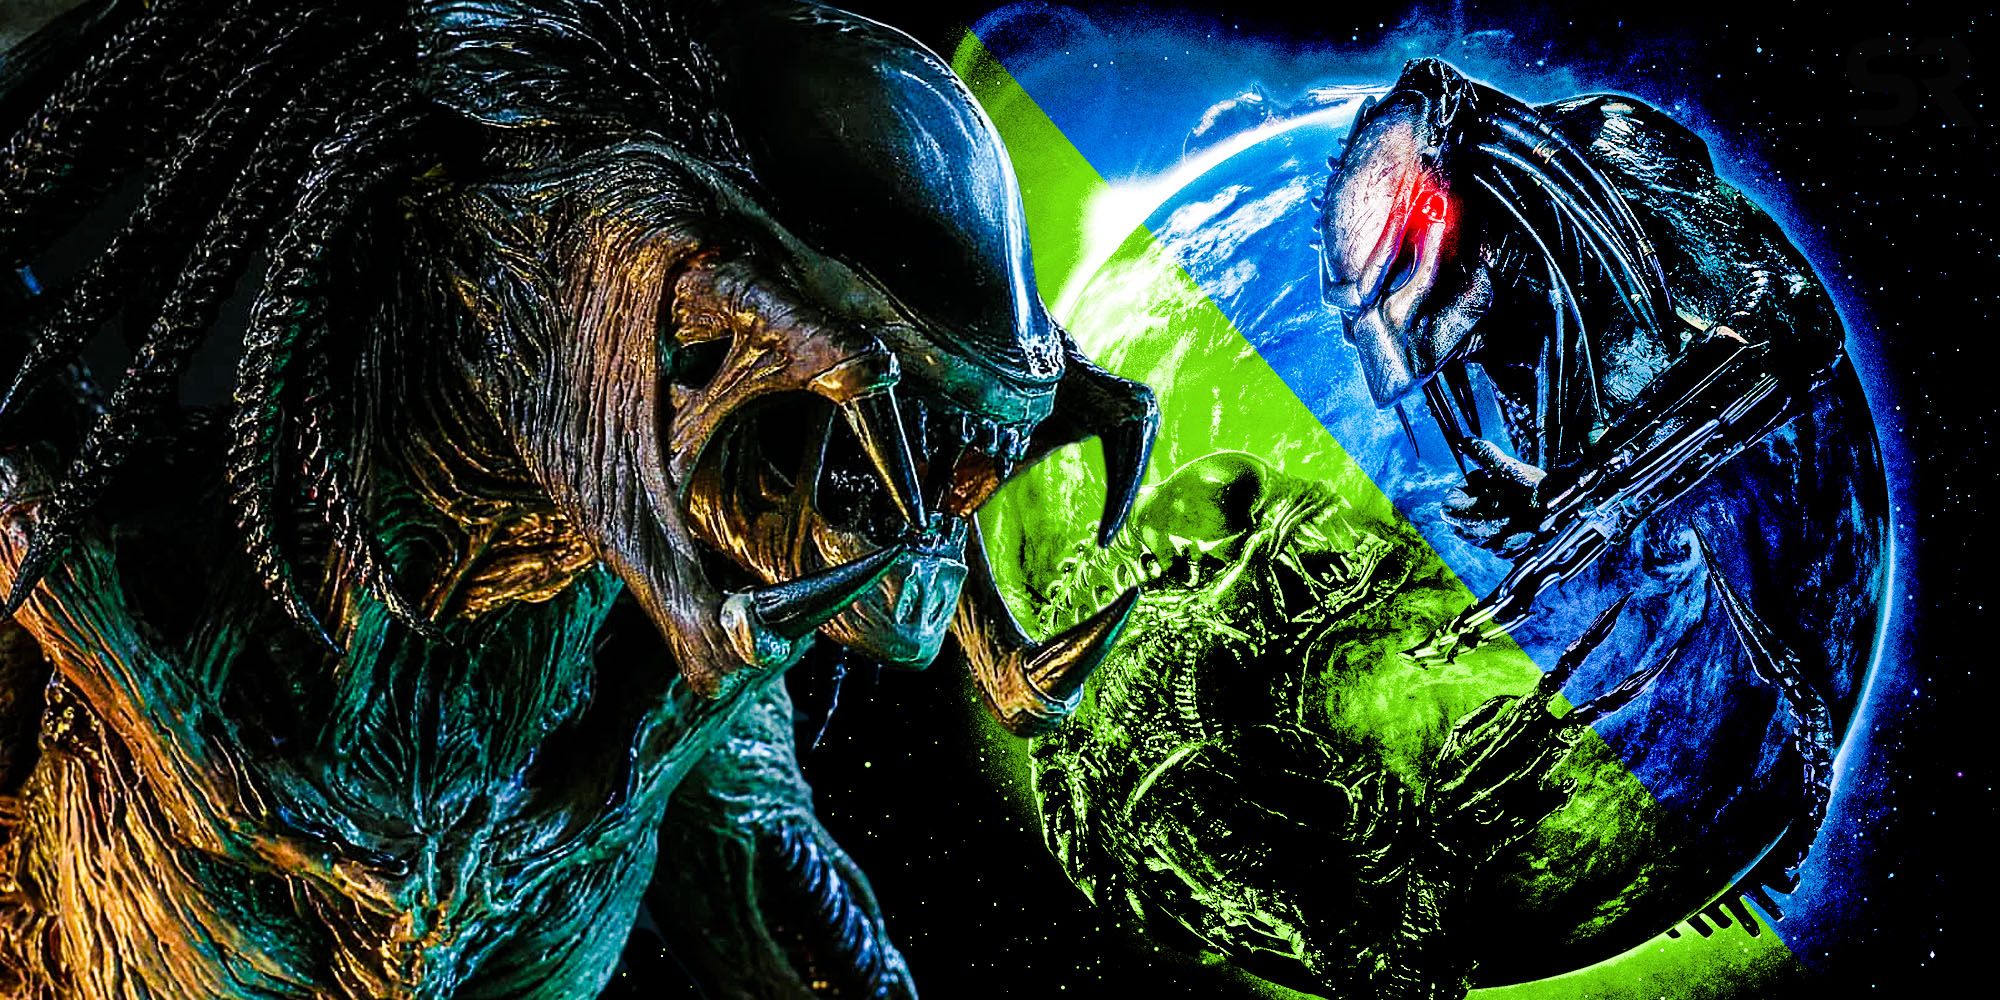 Alien vs predator Requiem AVPR Almost Killed The Predalien In The Opening Scene